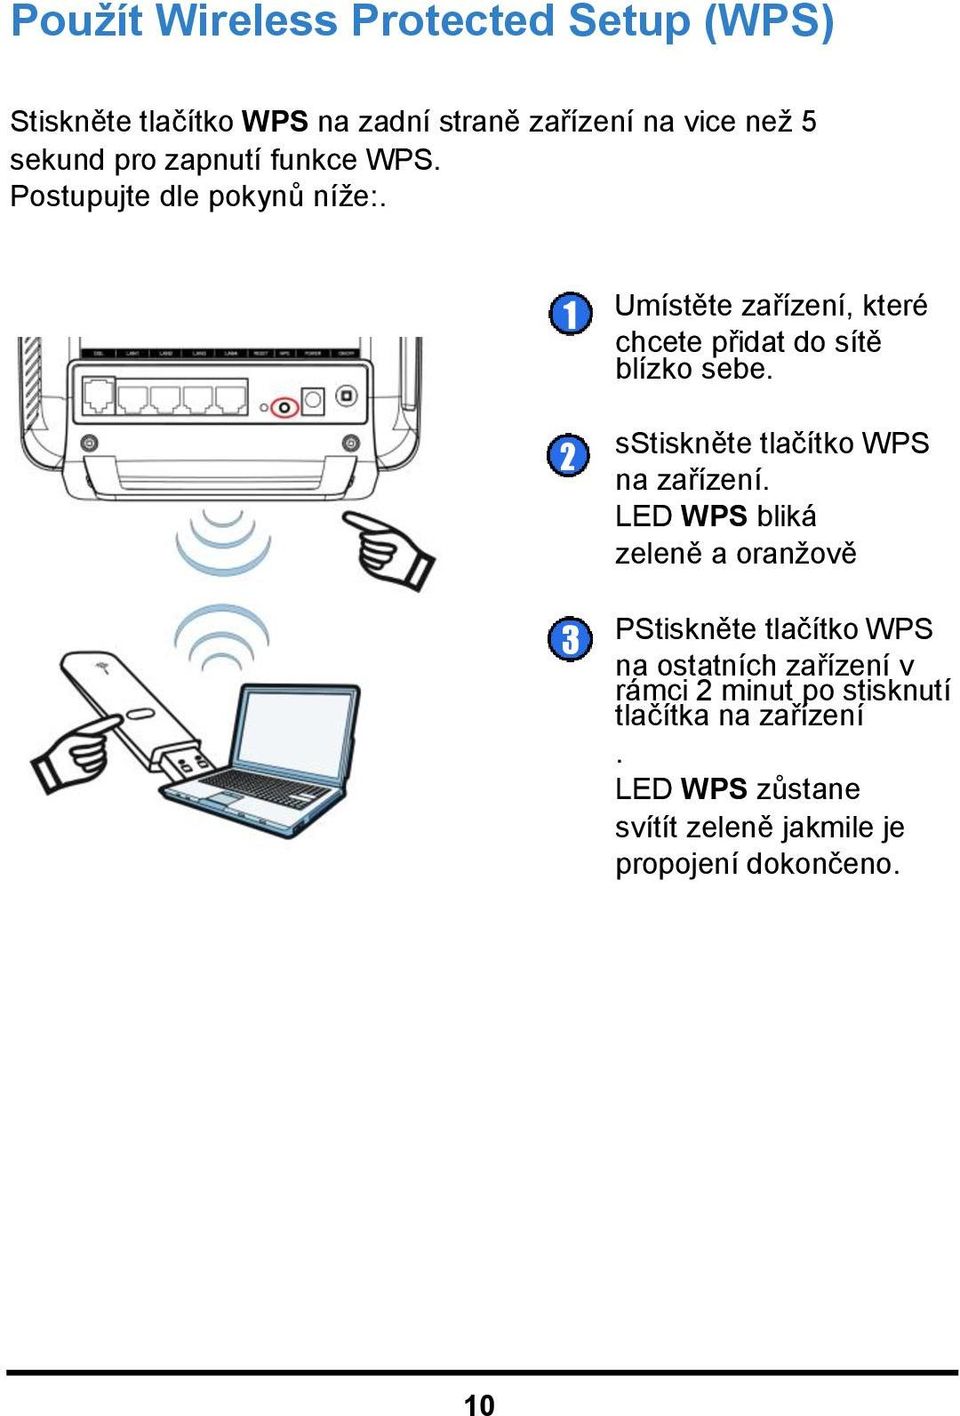 2 sstiskněte tlačítko WPS na zařízení.